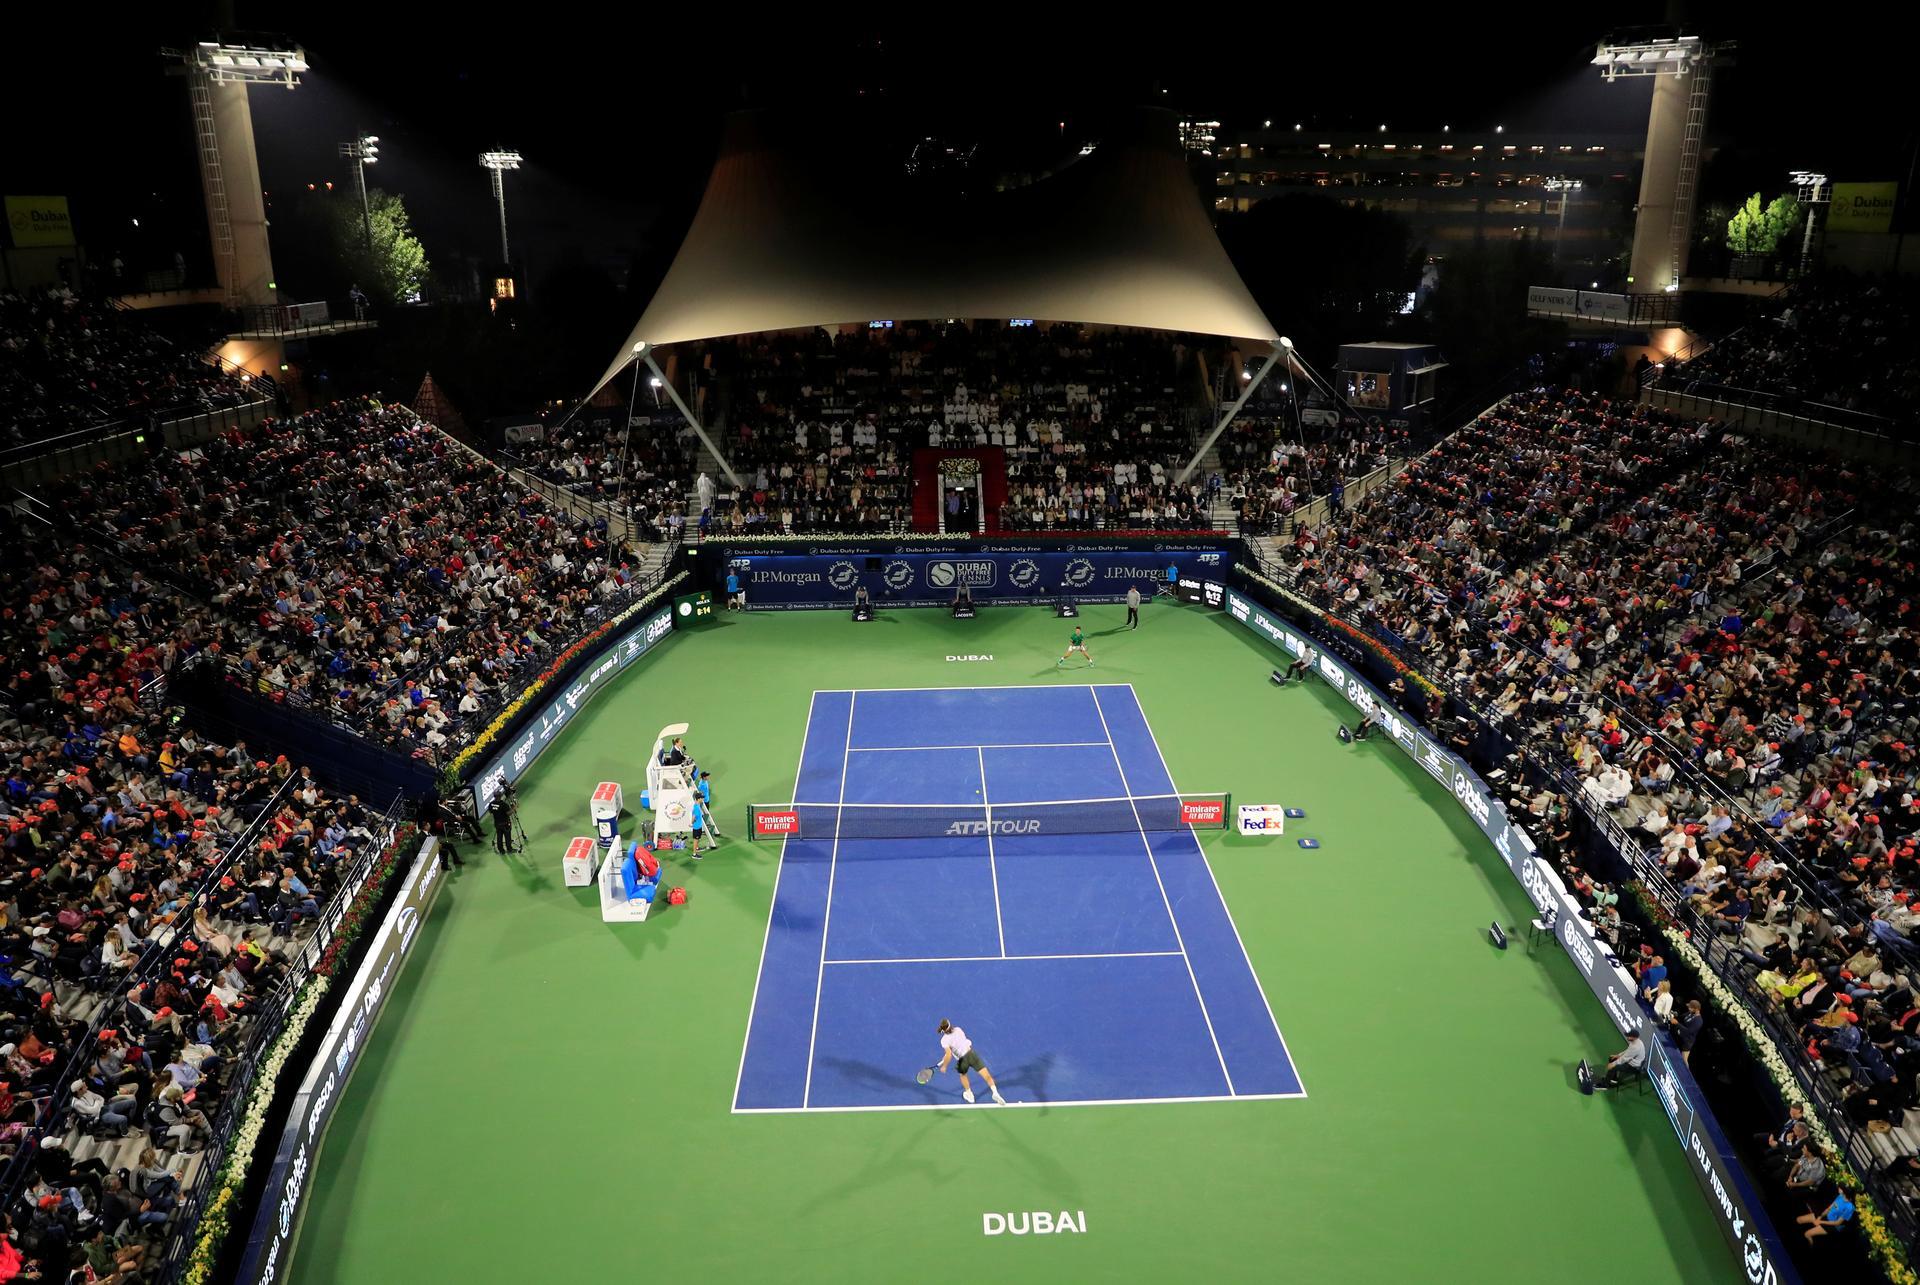 Atp dubai. ATP 500 Dubai. Dubai Tennis Stadium.